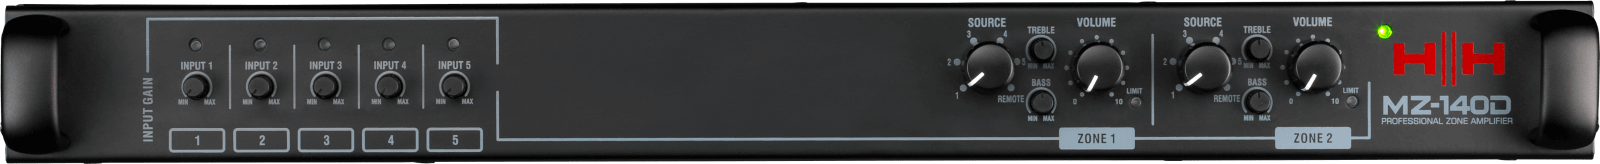 MZ-140D_Panel